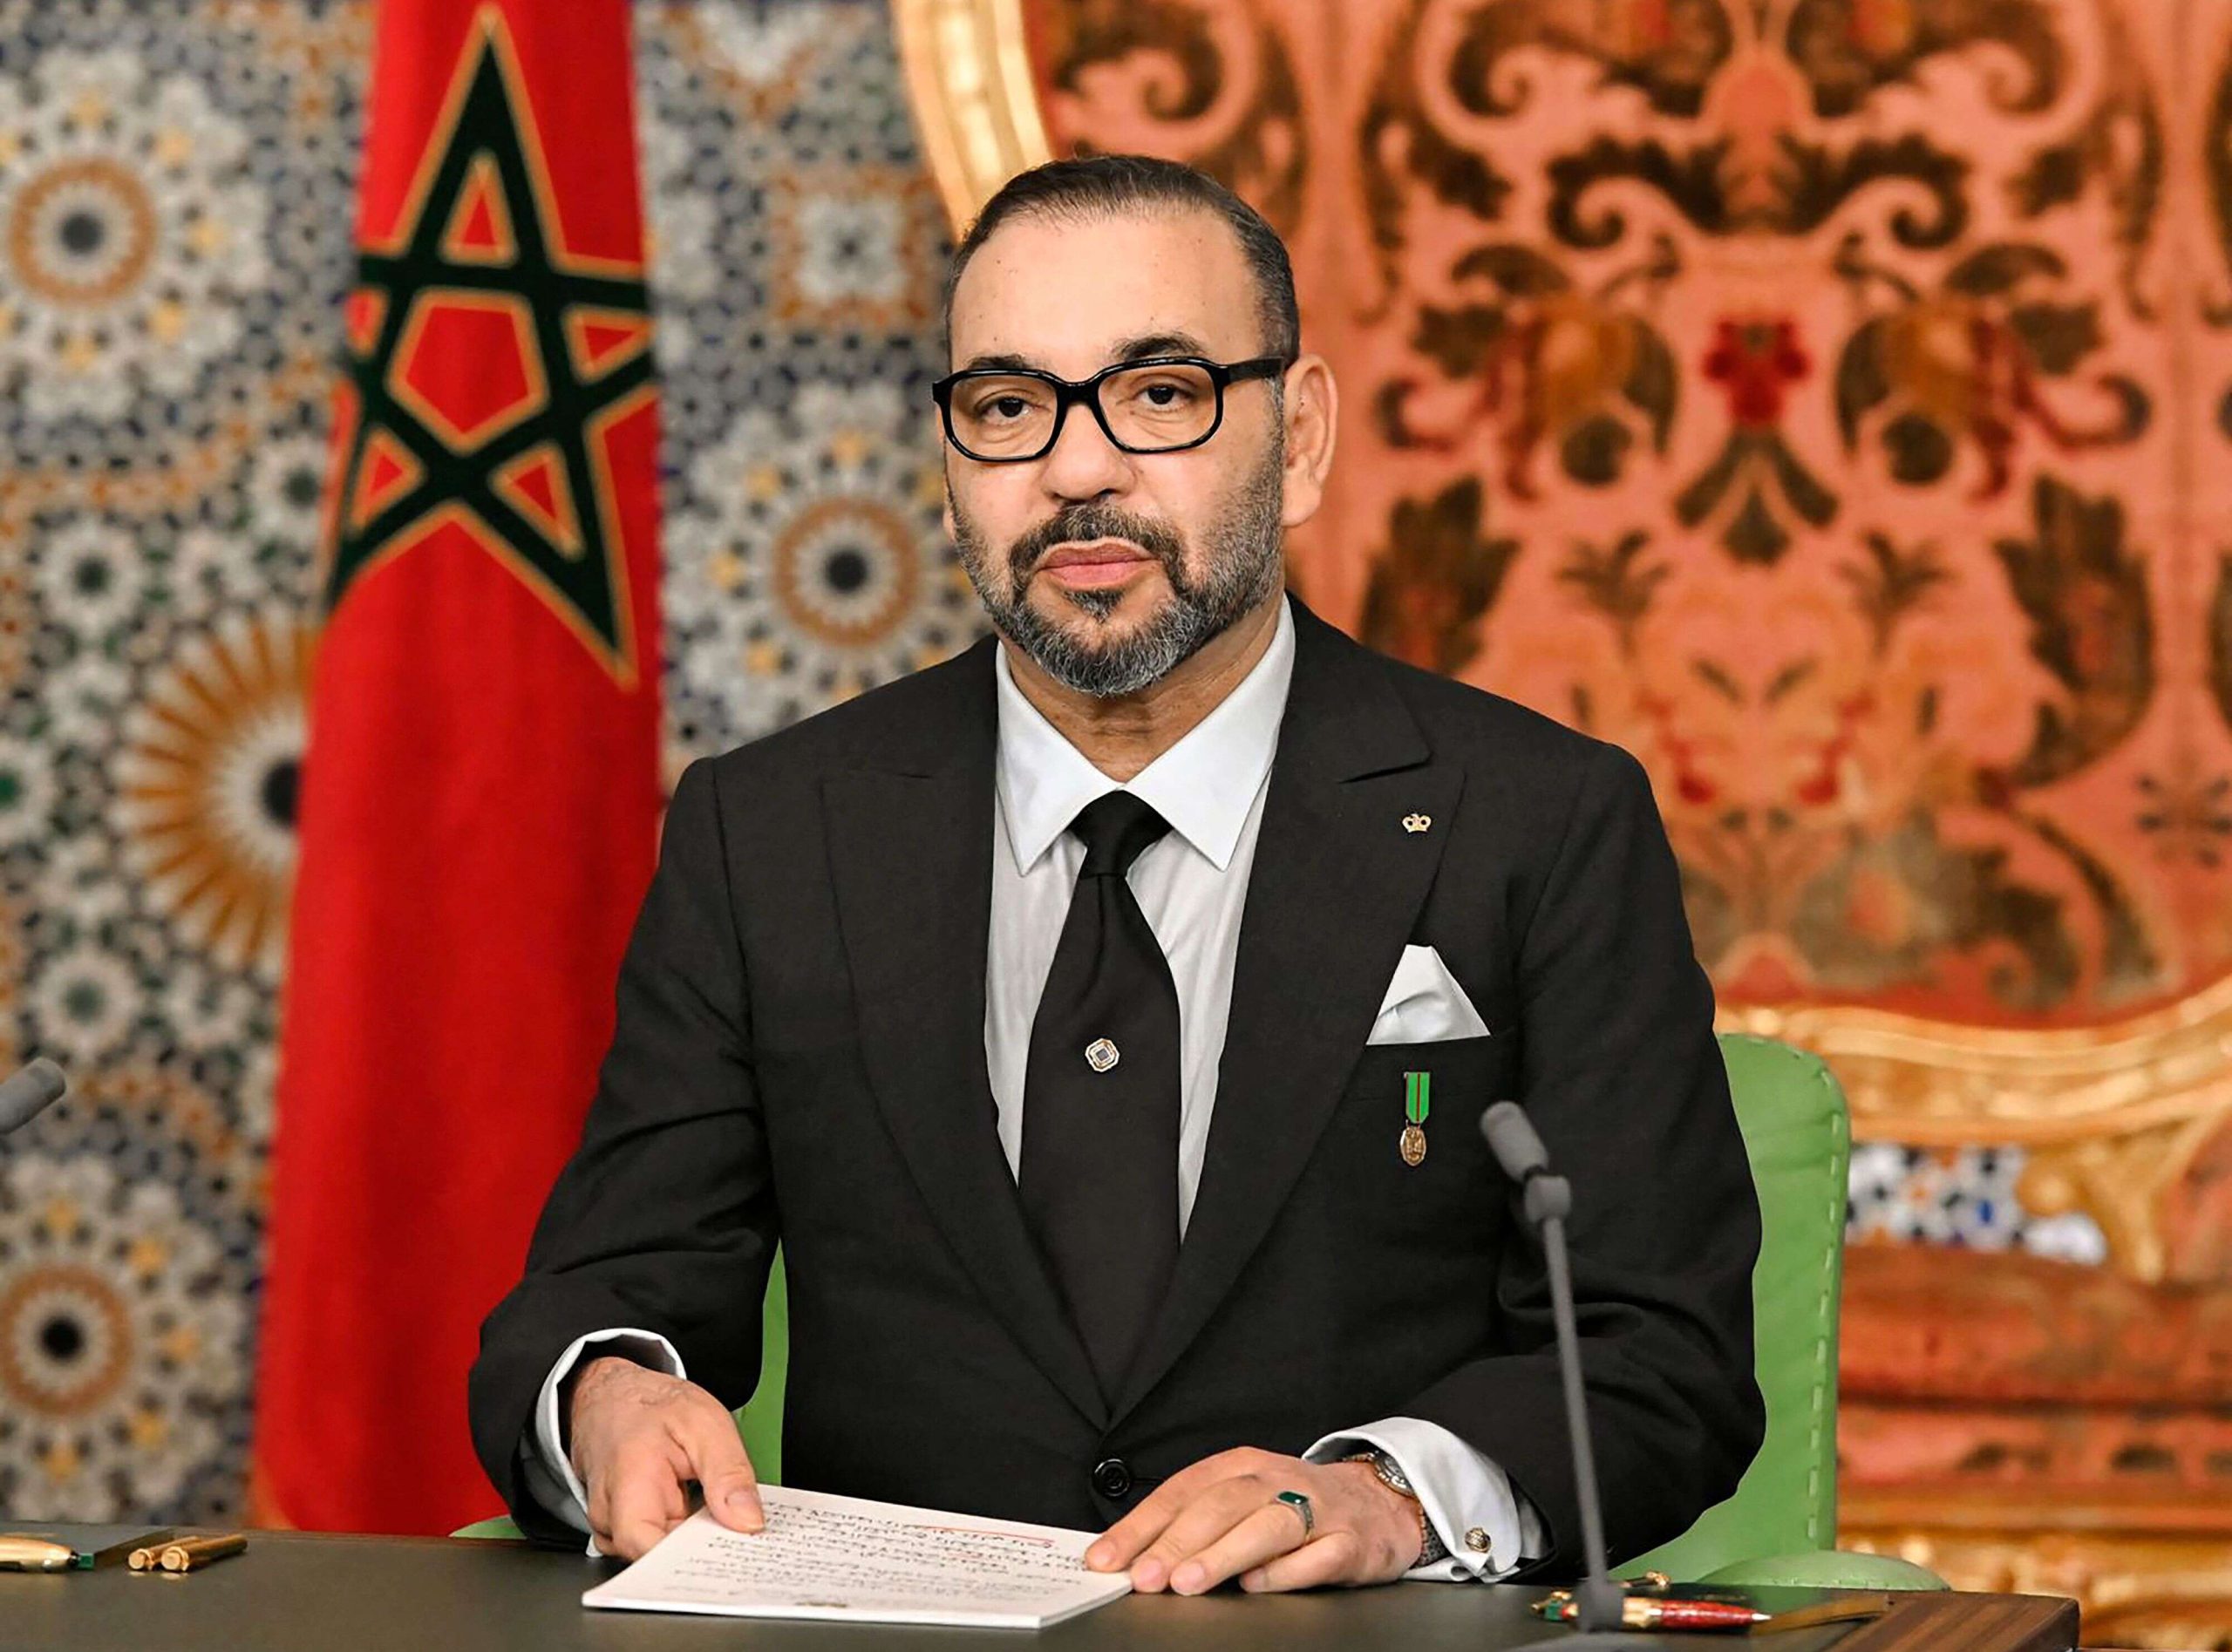 جون أفريك: العاهل المغربي سيشارك في القمة العربية بالجزائر وحث زعماء آخرين على الحضور لإنجاحها